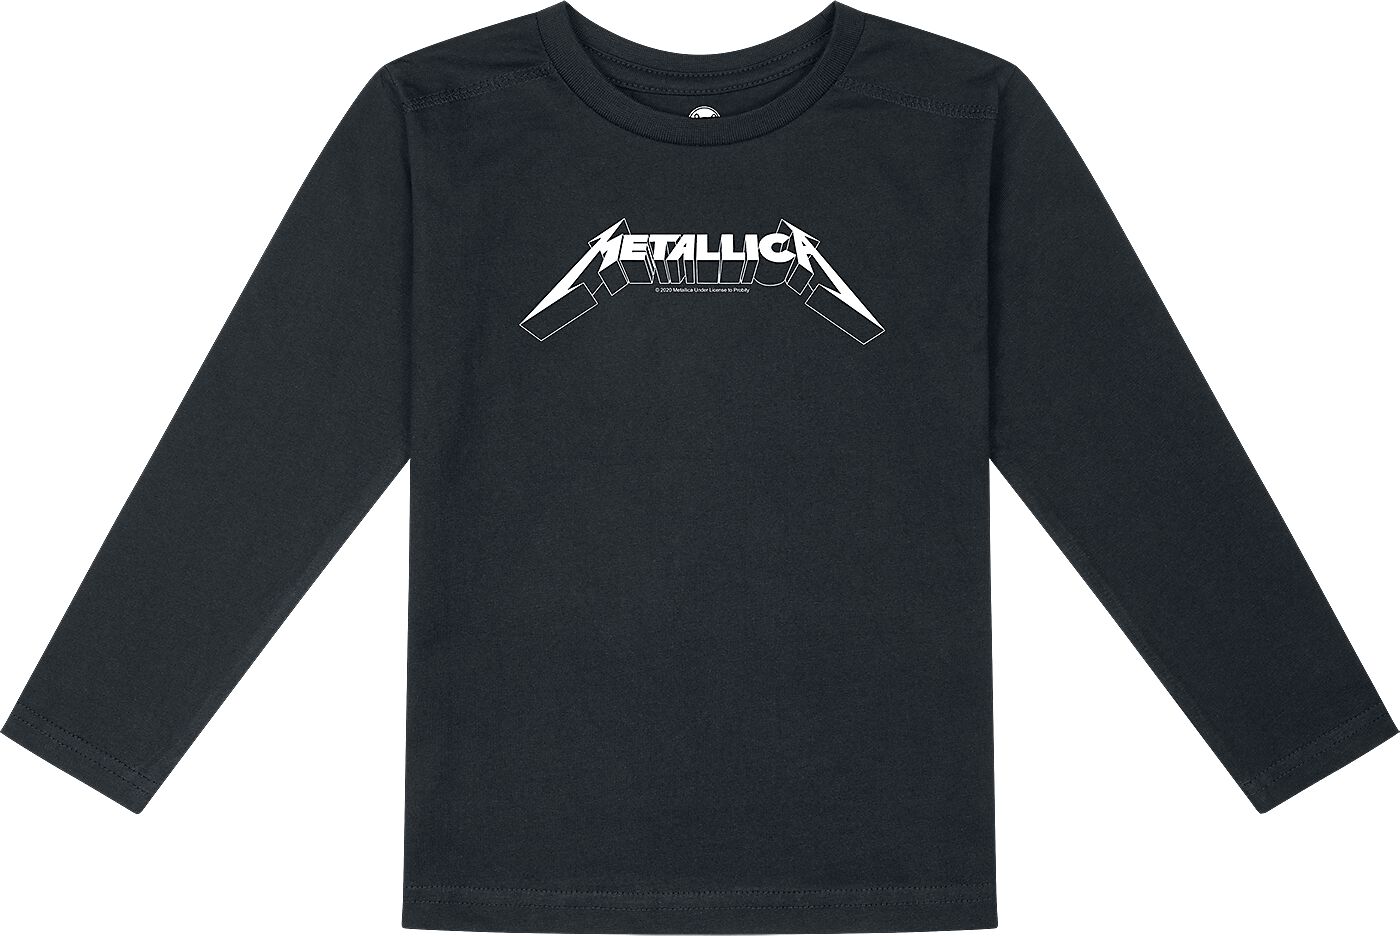 Metallica Langarmshirt für Kinder - Metal-Kids - Logo - für Mädchen & Jungen - schwarz  - Lizenziertes Merchandise!